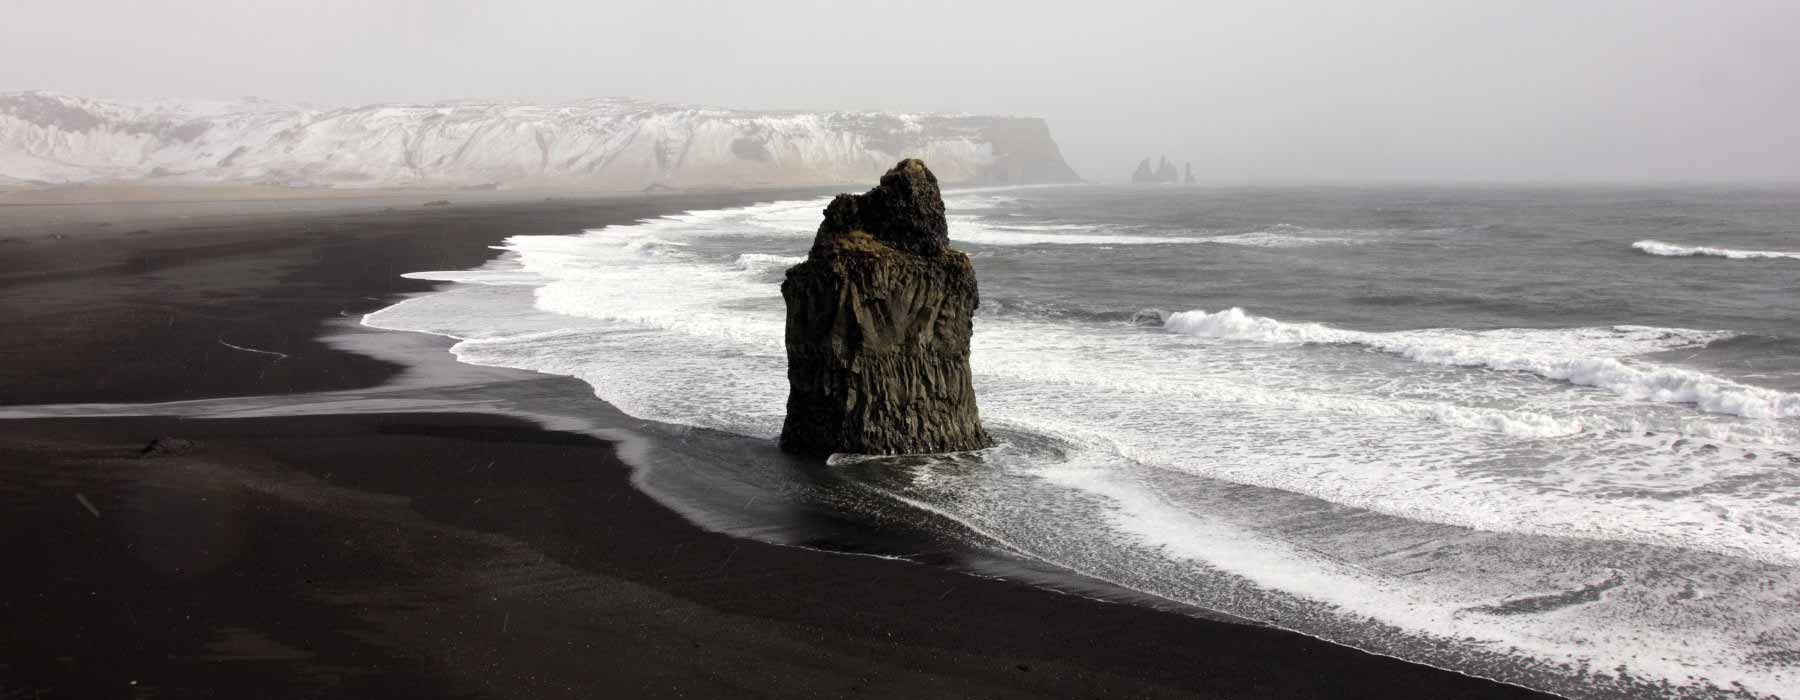 Iceland<br class="hidden-md hidden-lg" /> Road Trips